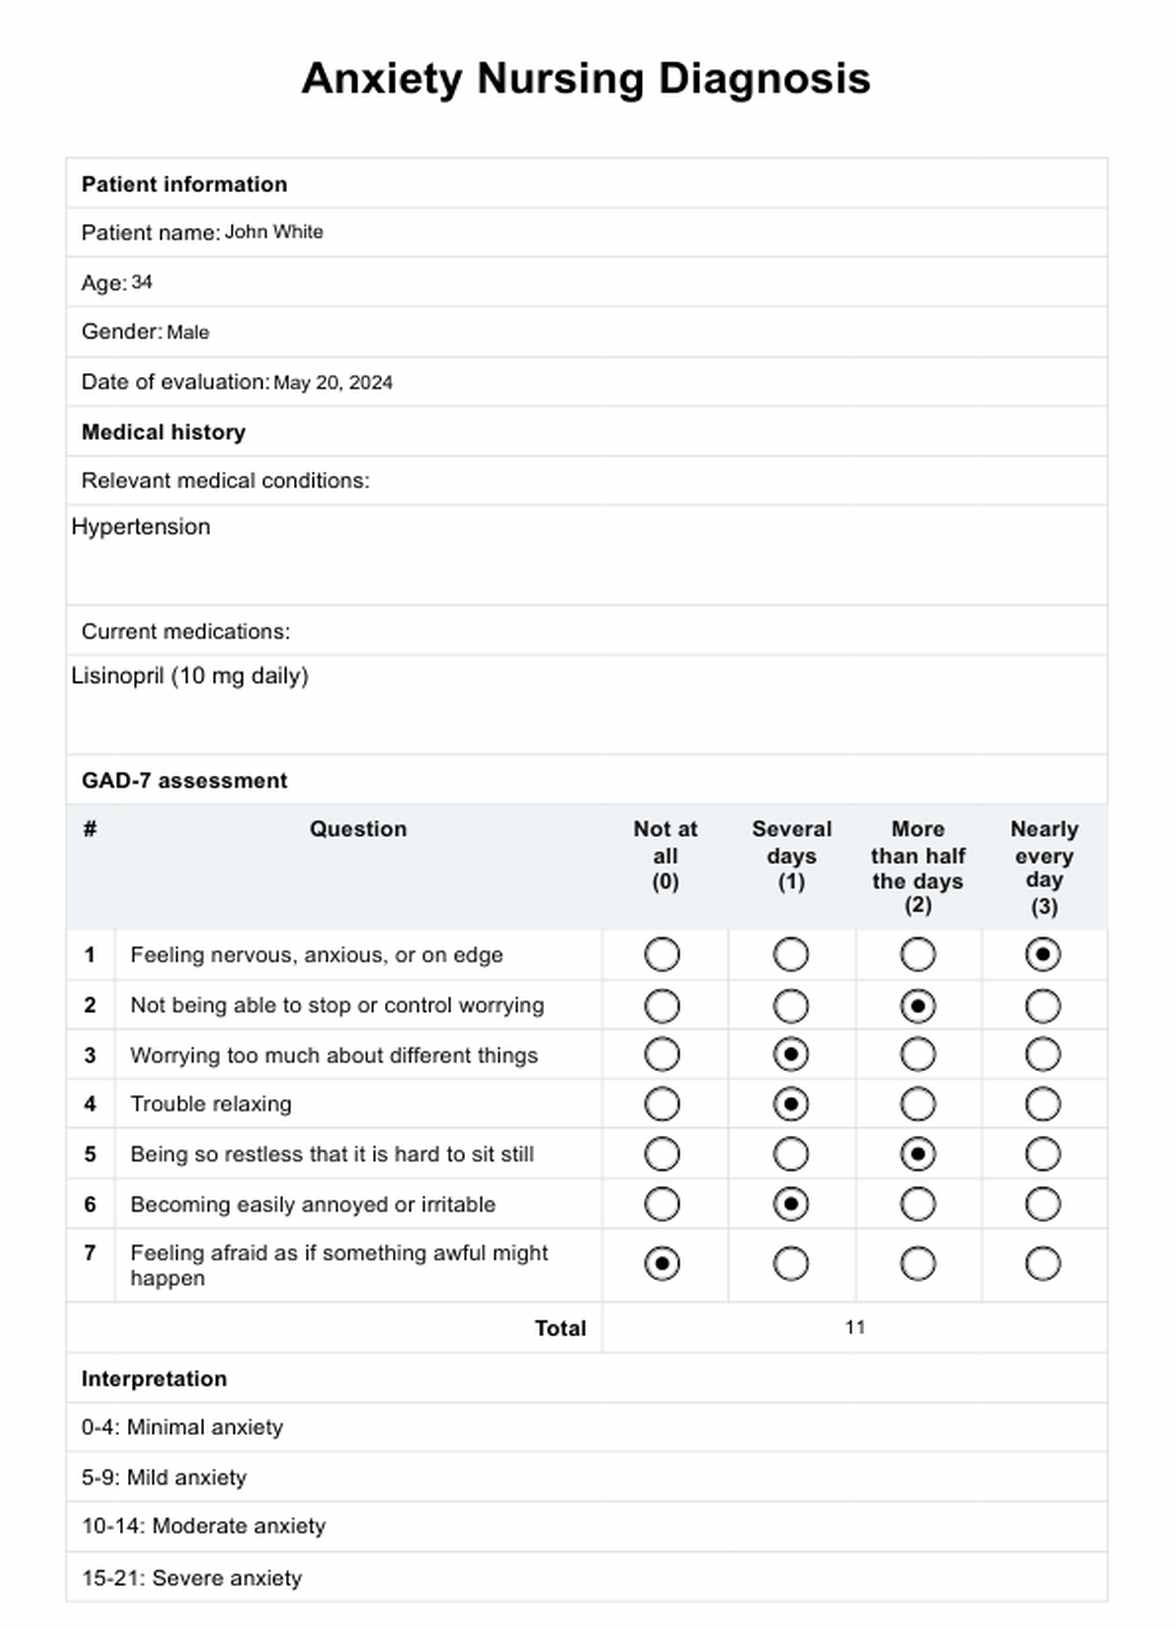 Anxiety Nursing Diagnosis PDF Example